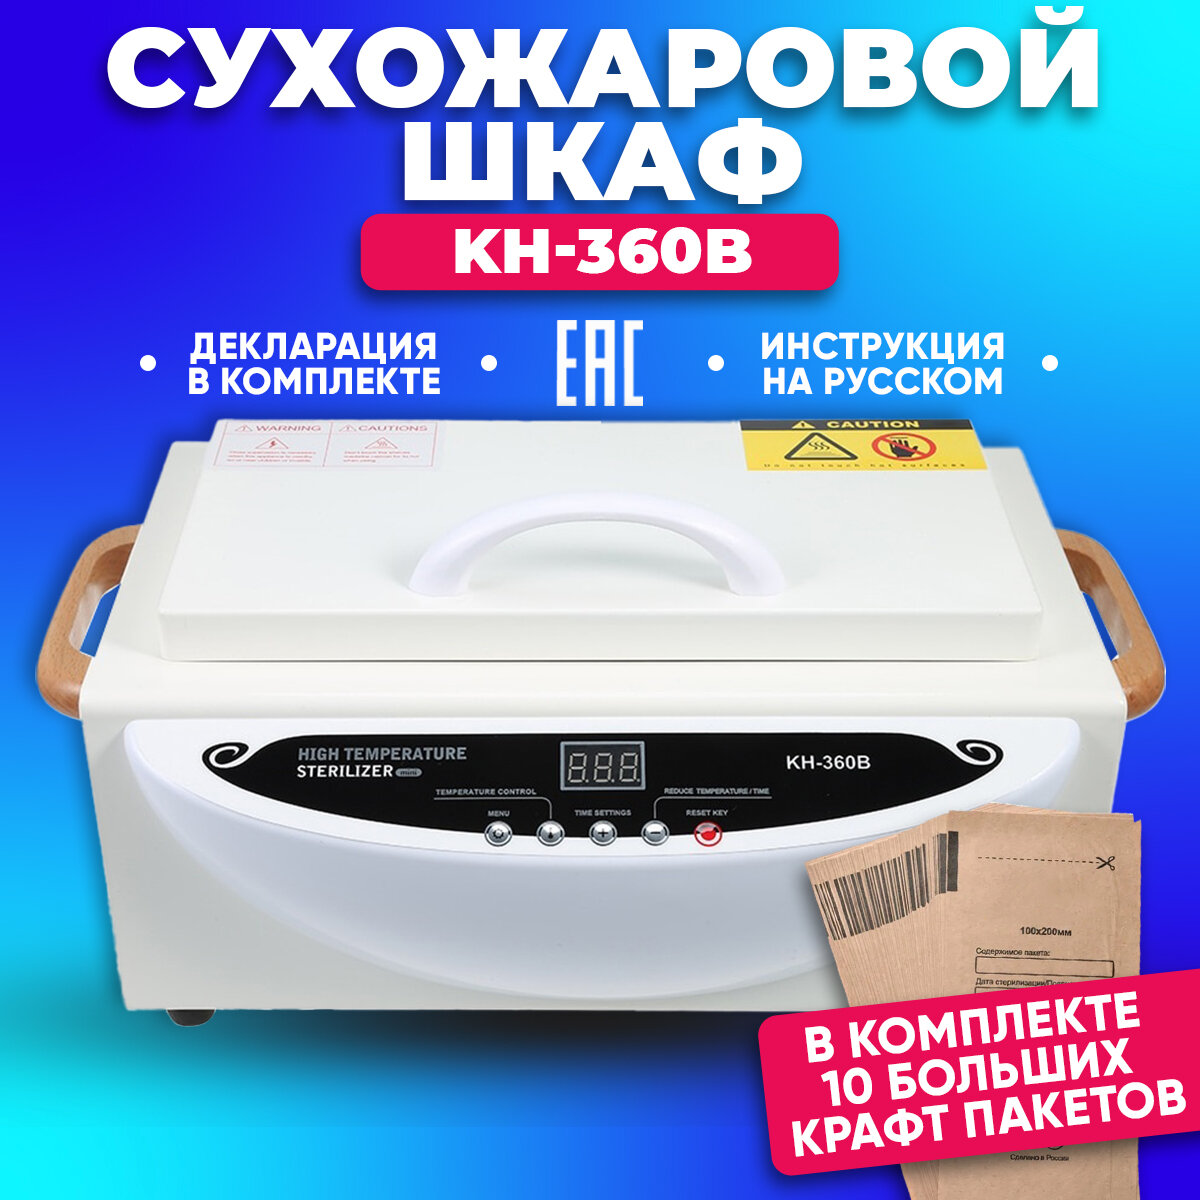 Сухожаровой шкаф KH-360B с дисплеем / Стерилизатор для маникюрных инструментов